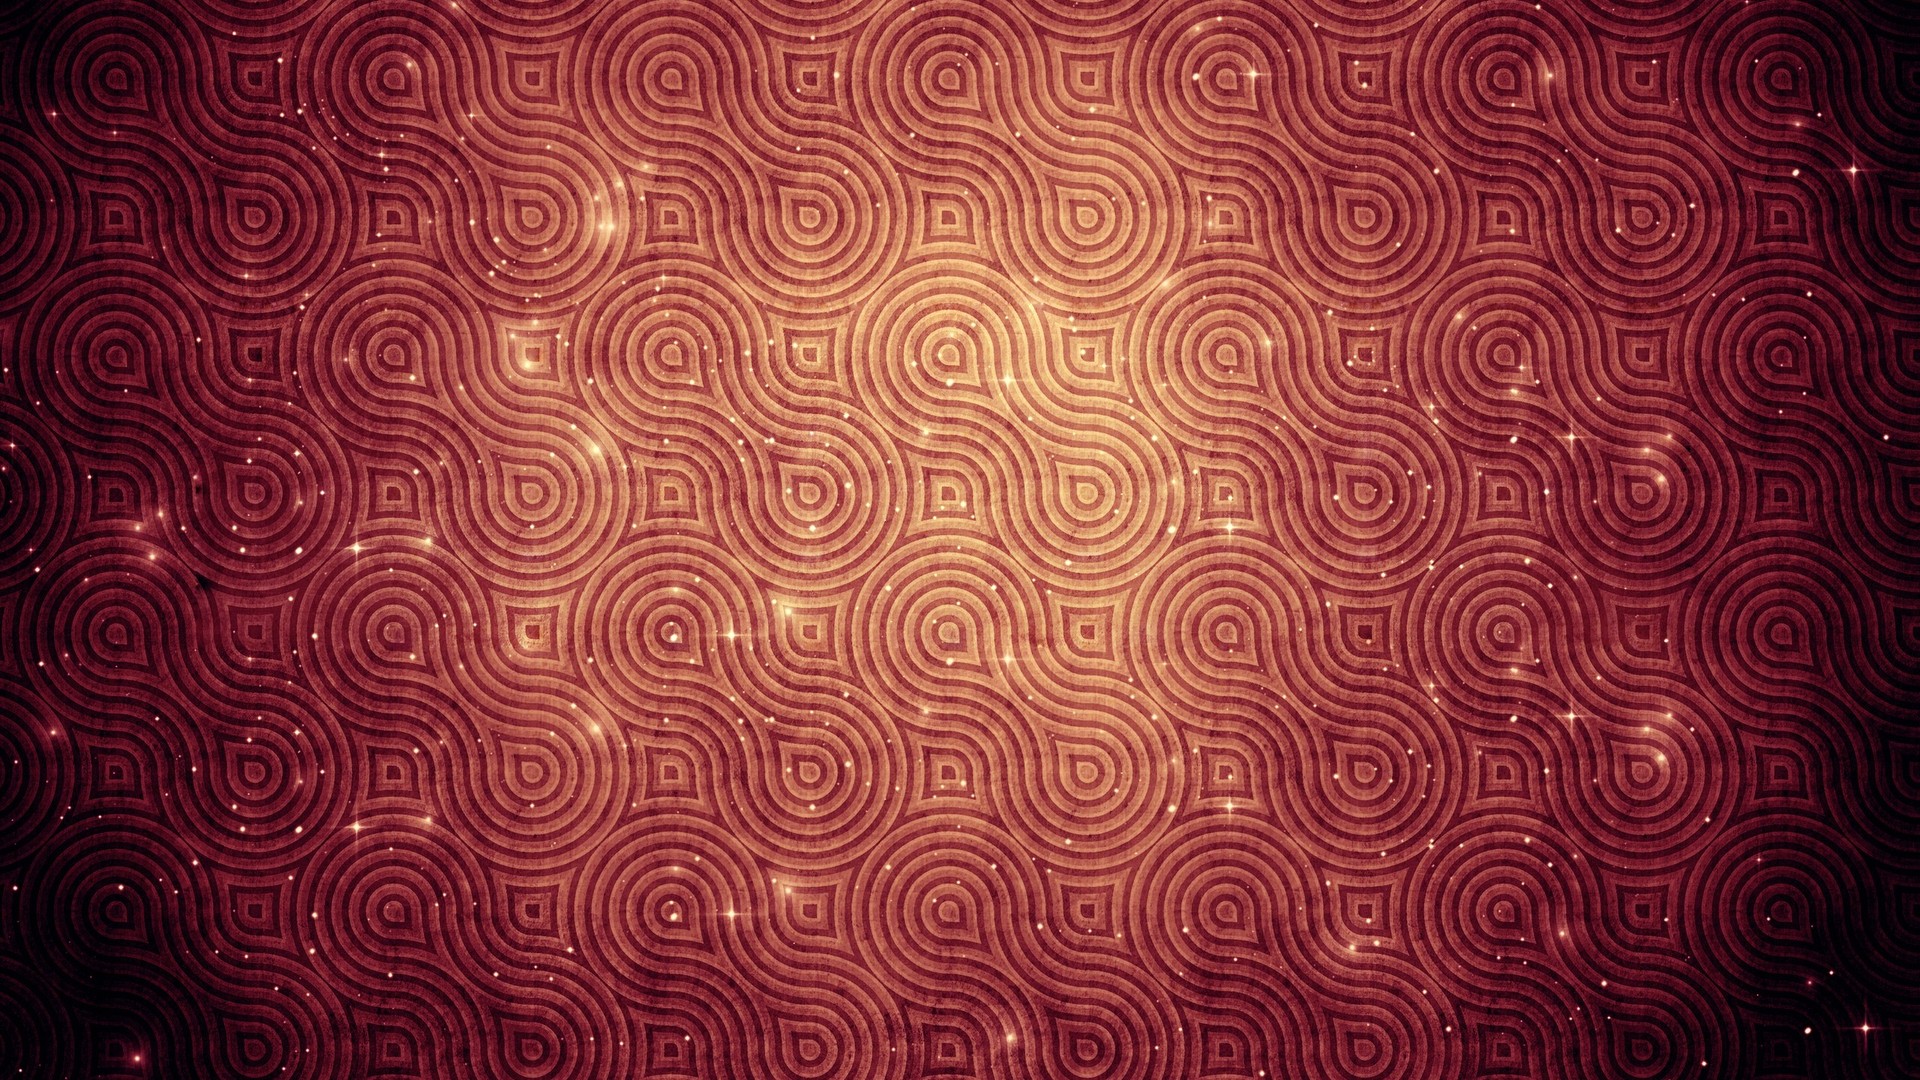 48+] Red and Black Pattern Wallpaper - WallpaperSafari